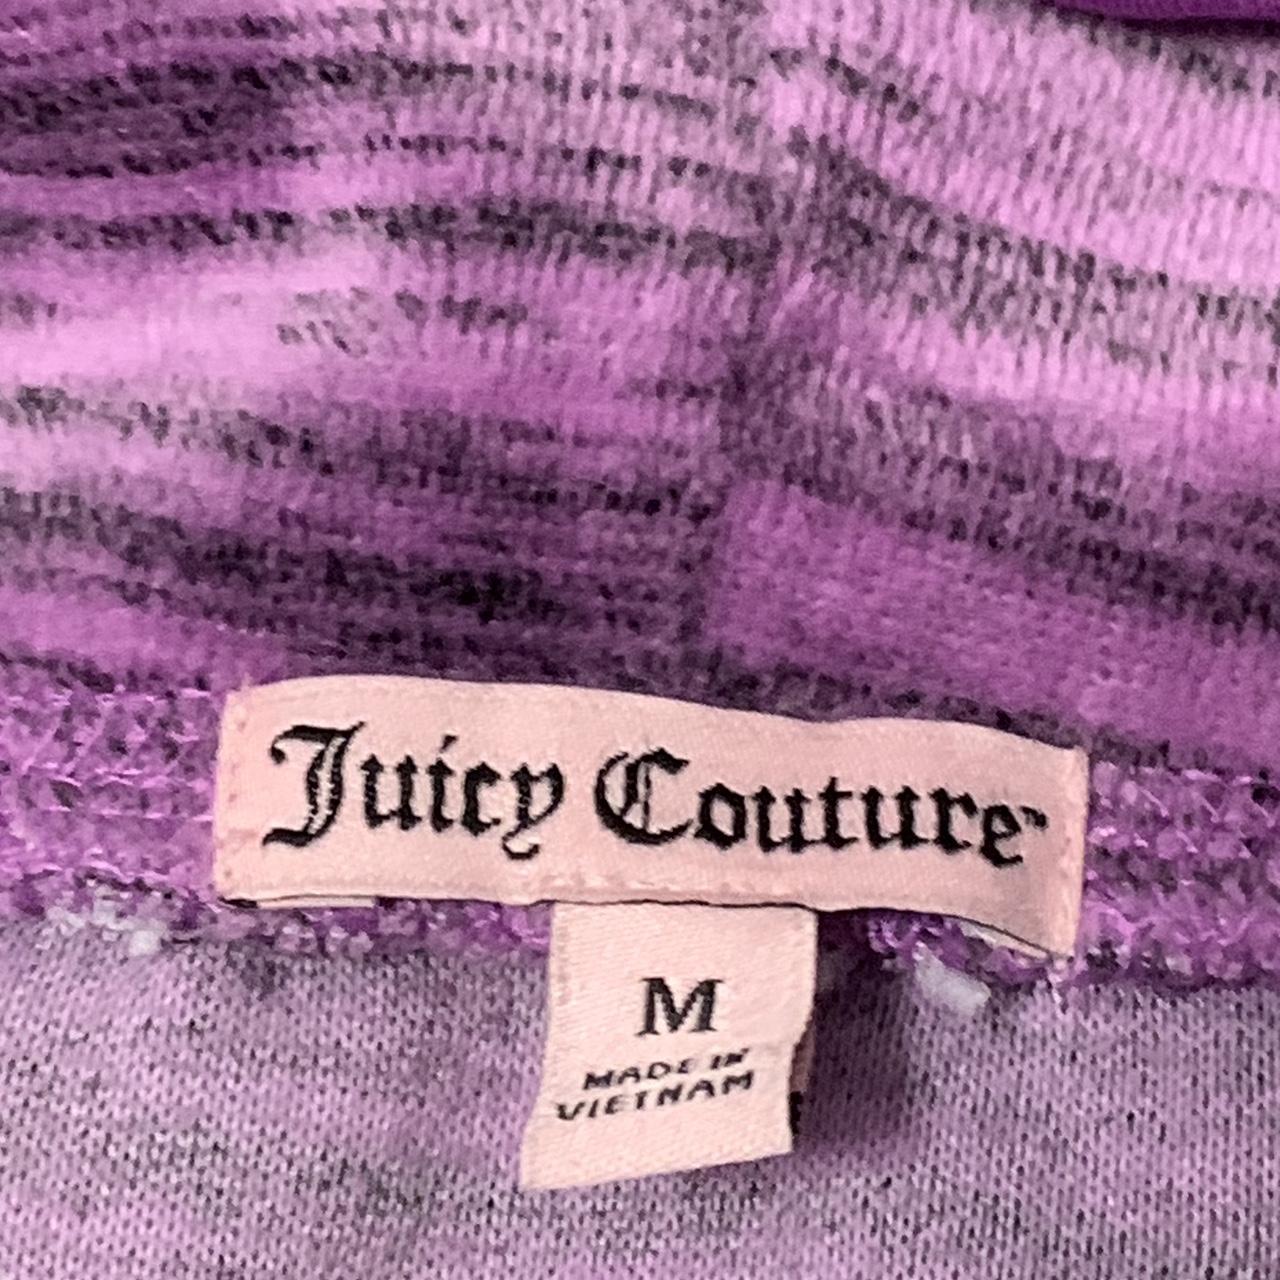 Juicy Couture Y2K Hoodie In Brand NWOT Condition... - Depop